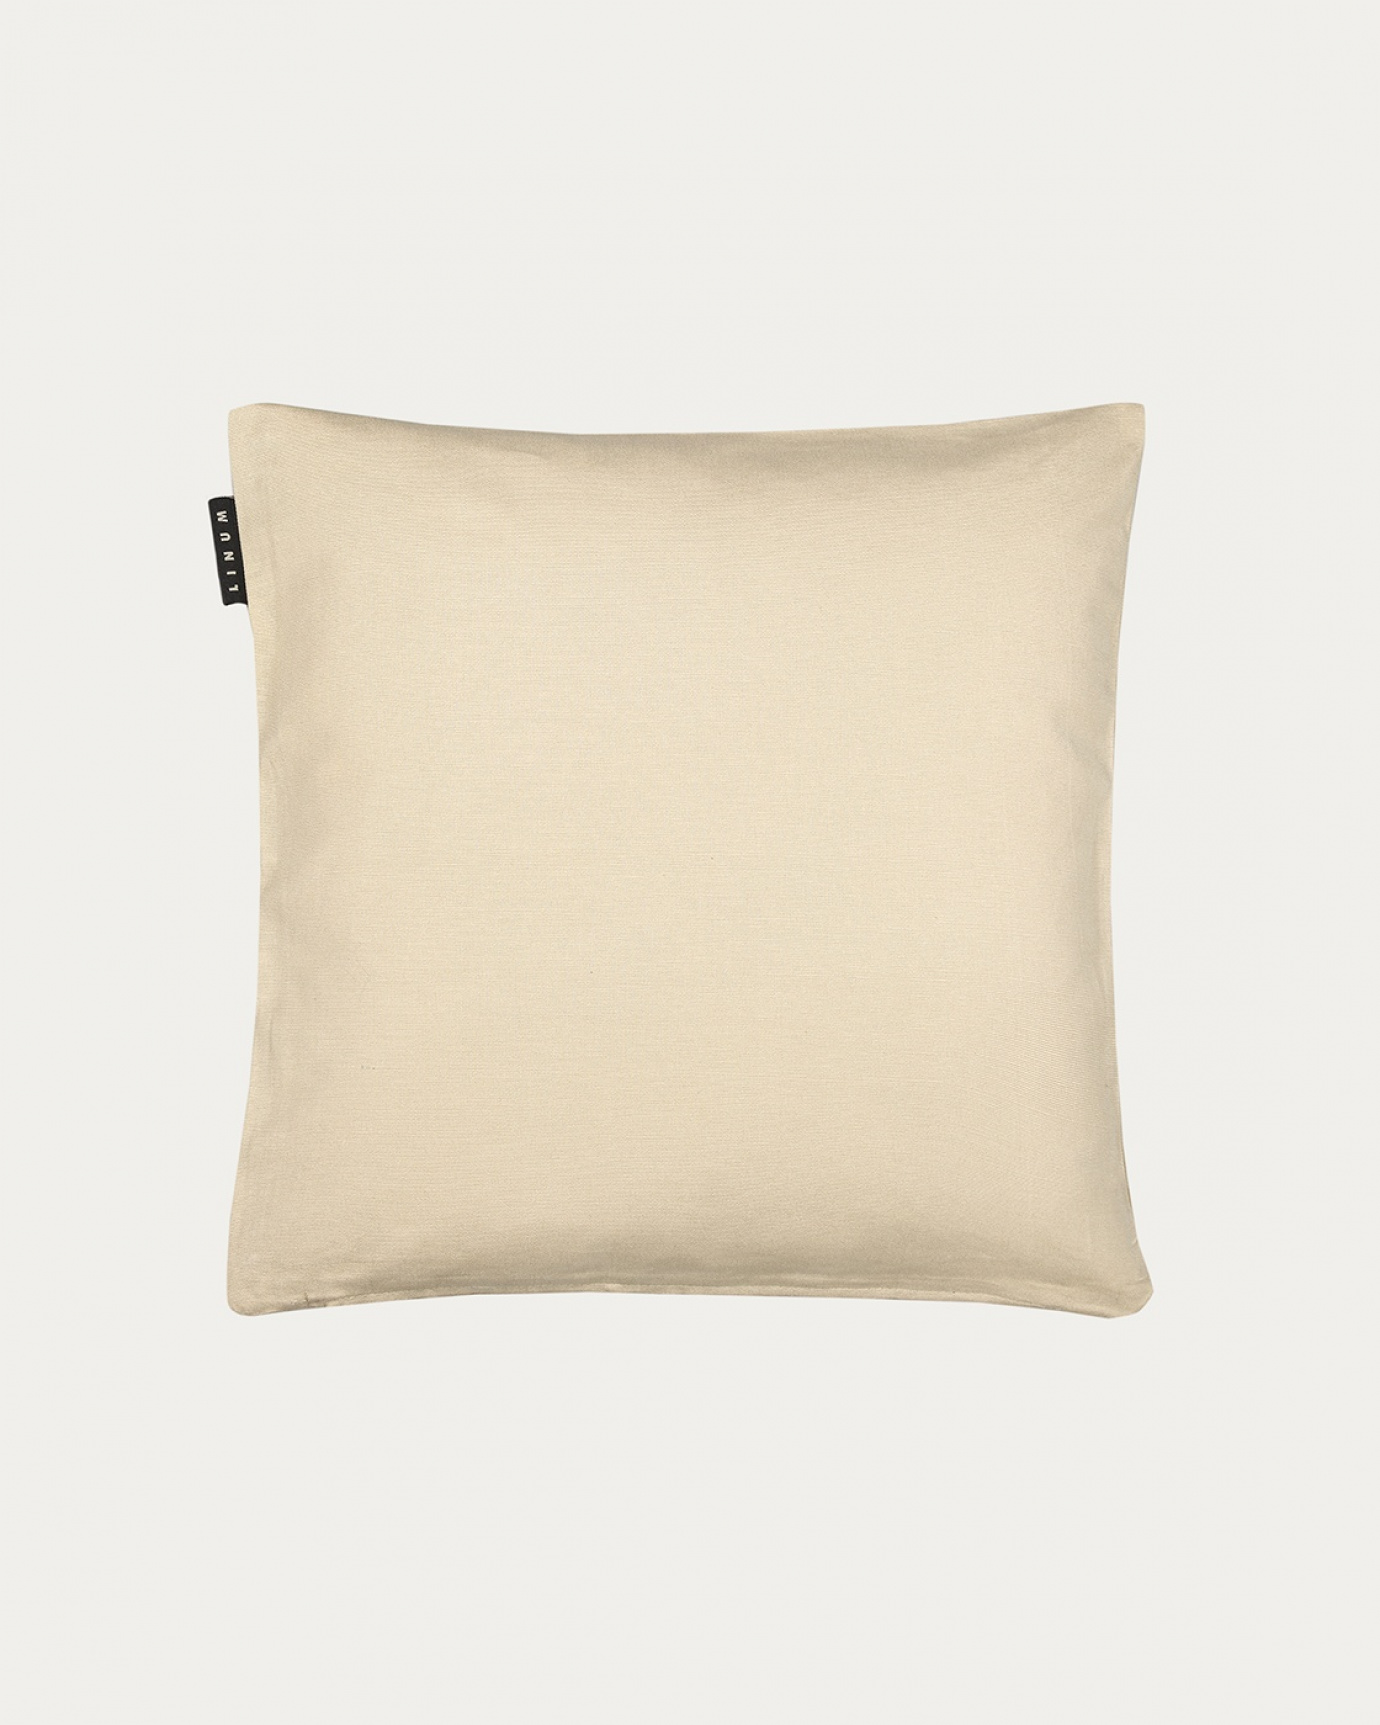 Produktbild warmes beige ANNABELL Kissenhülle aus weicher Baumwolle von LINUM DESIGN. Größe 40x40 cm.